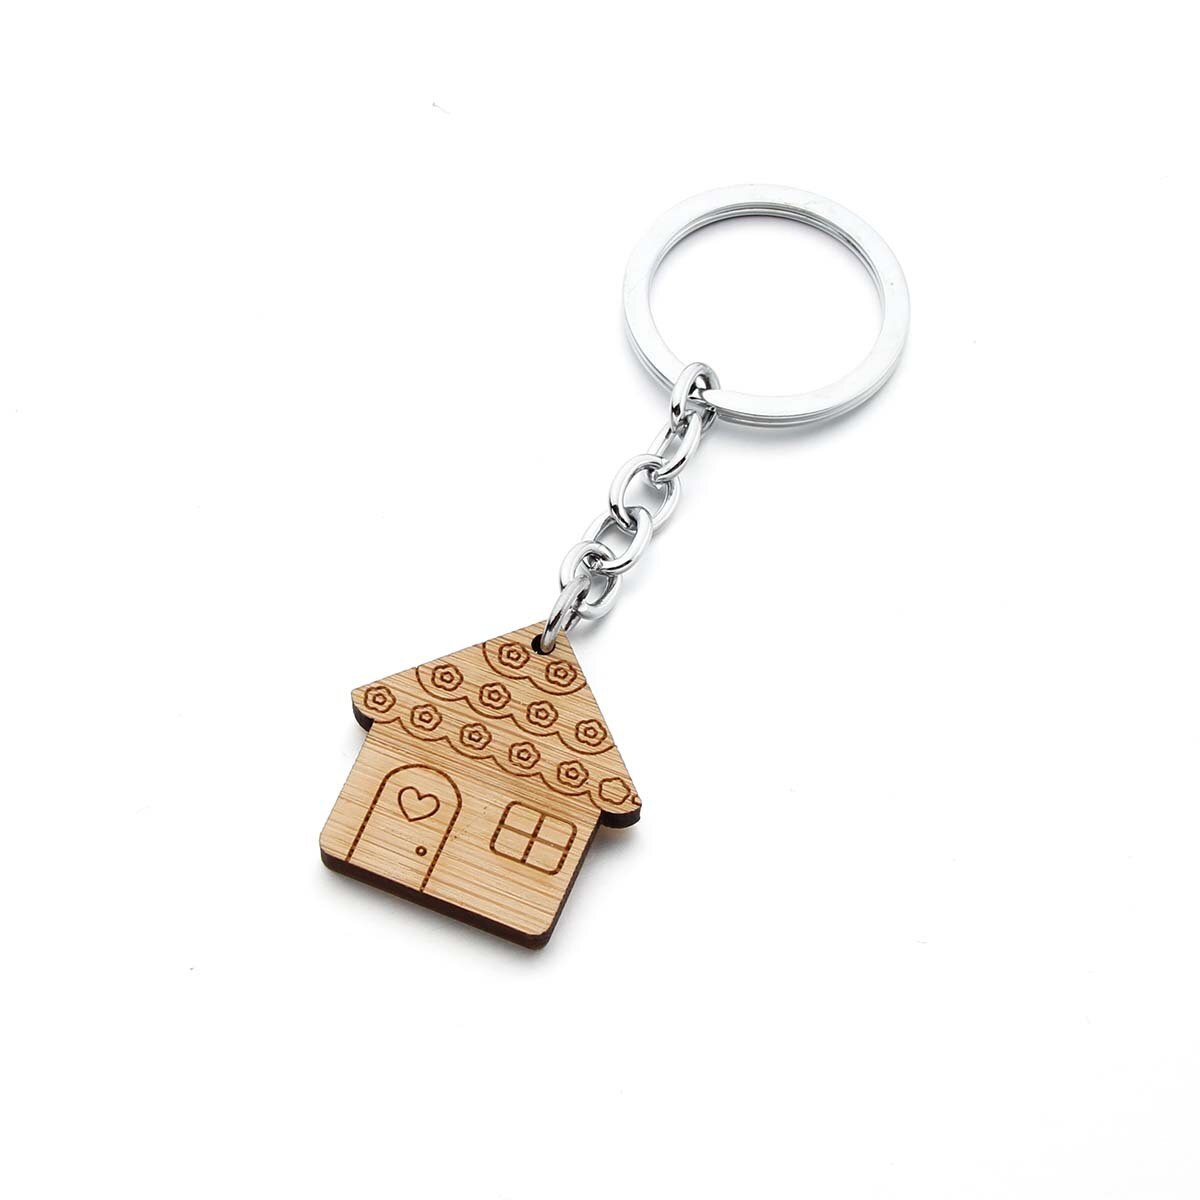 Aktuelt tilgængeligt salg nøgle spænde træ nøglering nøgle spænde hjem hus træ nøgle træ nøgle spænde nøgle spænde nøgle: Elsker hus